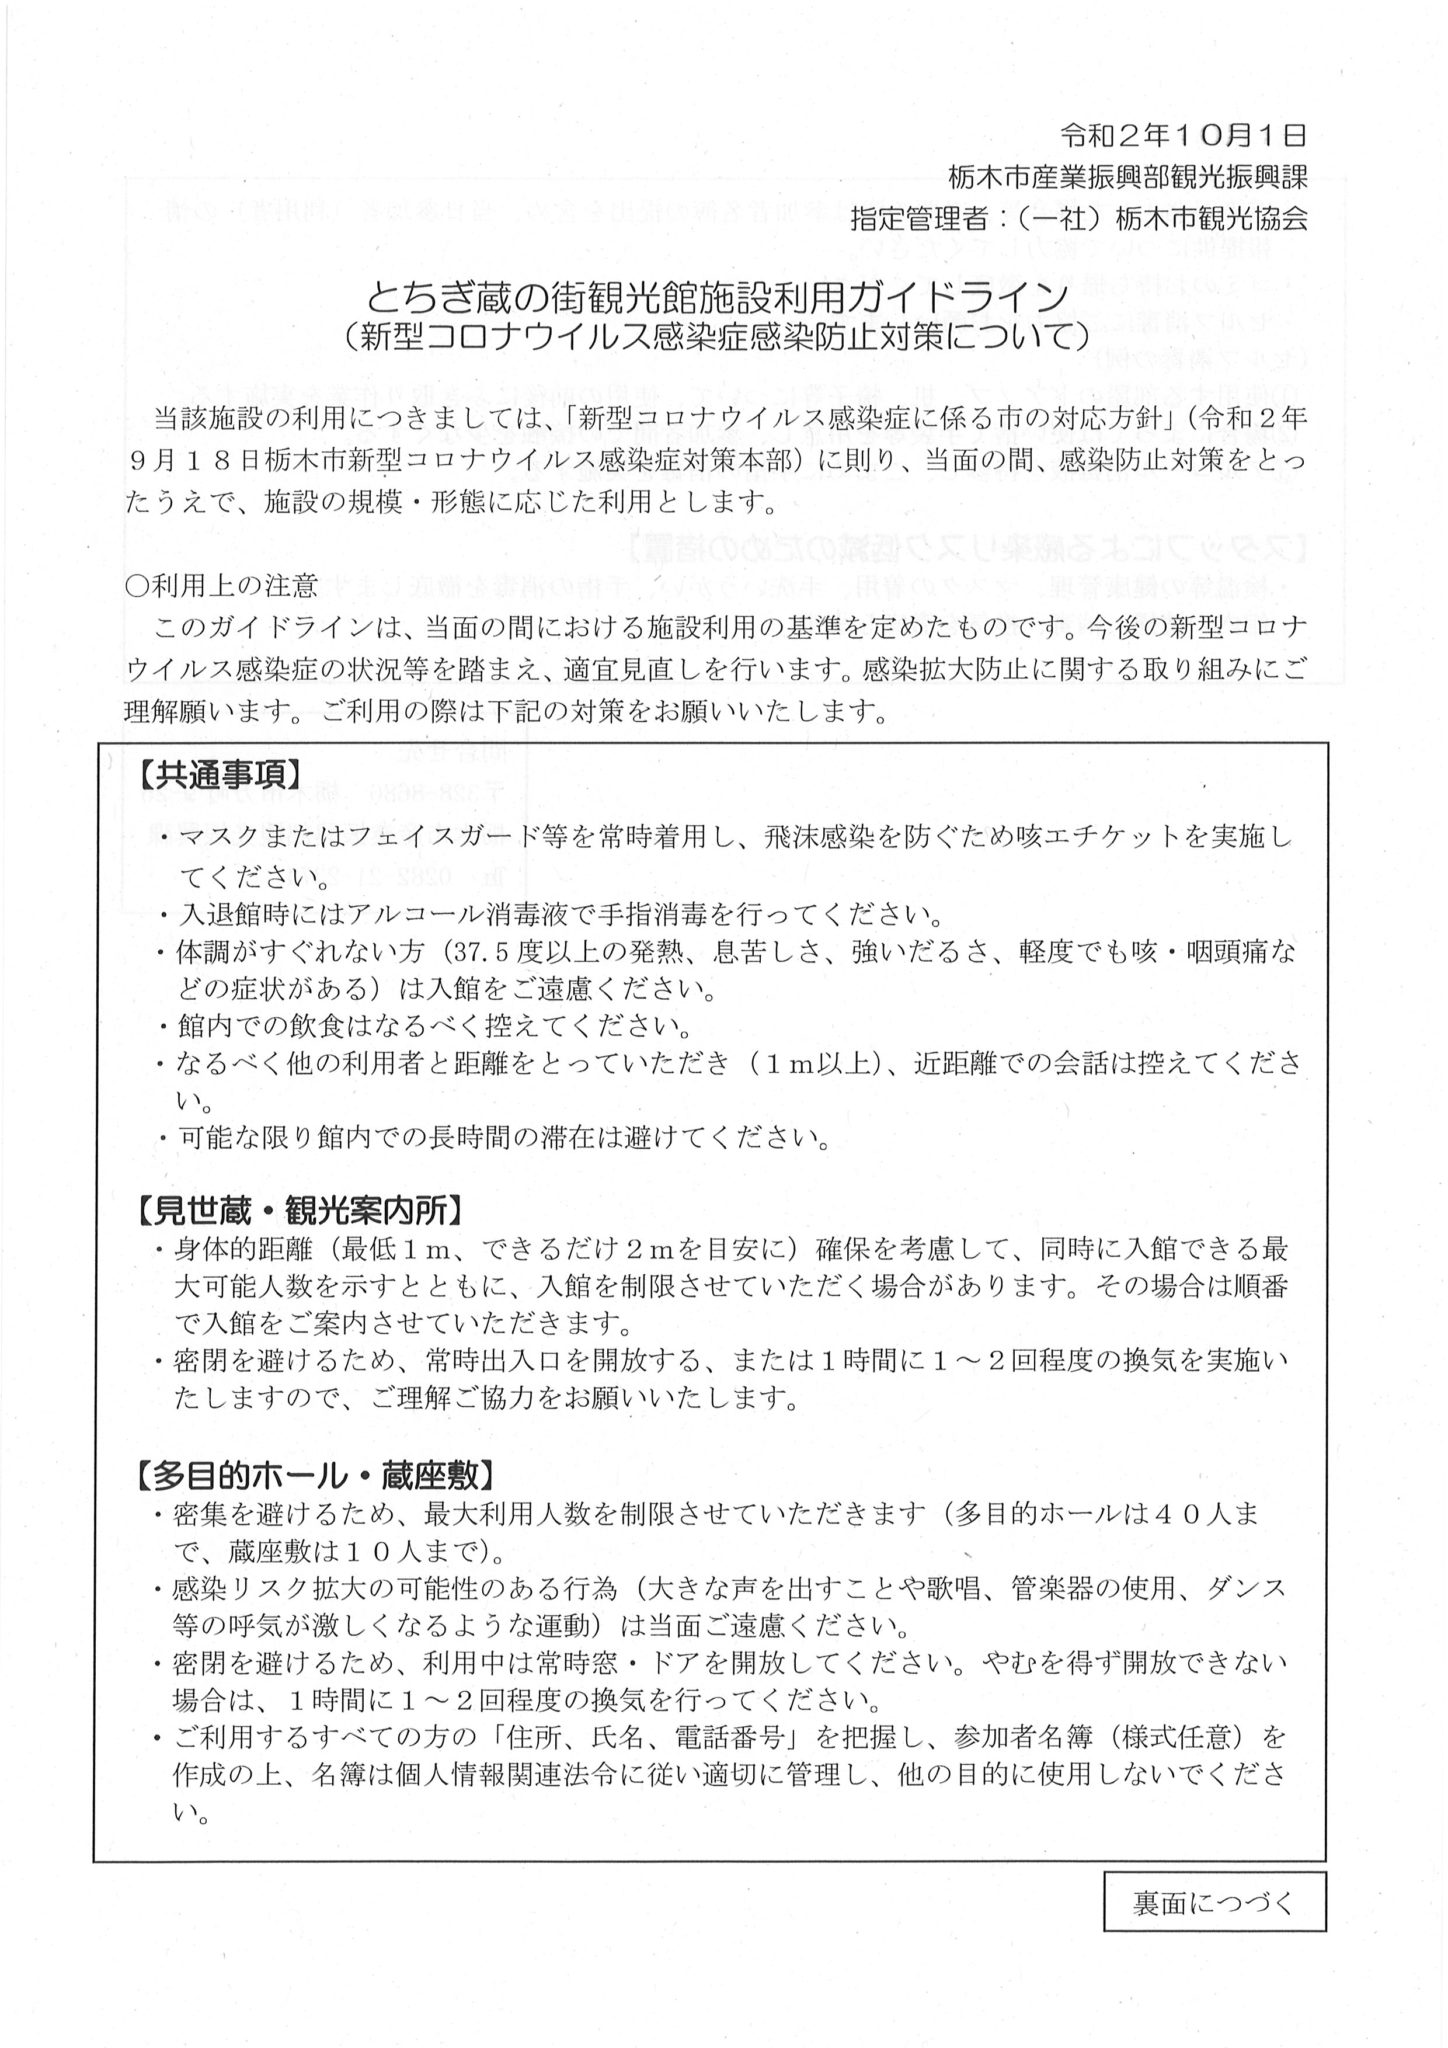 ツイッター栃木コロナ 栃木市における新型コロナウイルス感染症 発生状況（全体数）